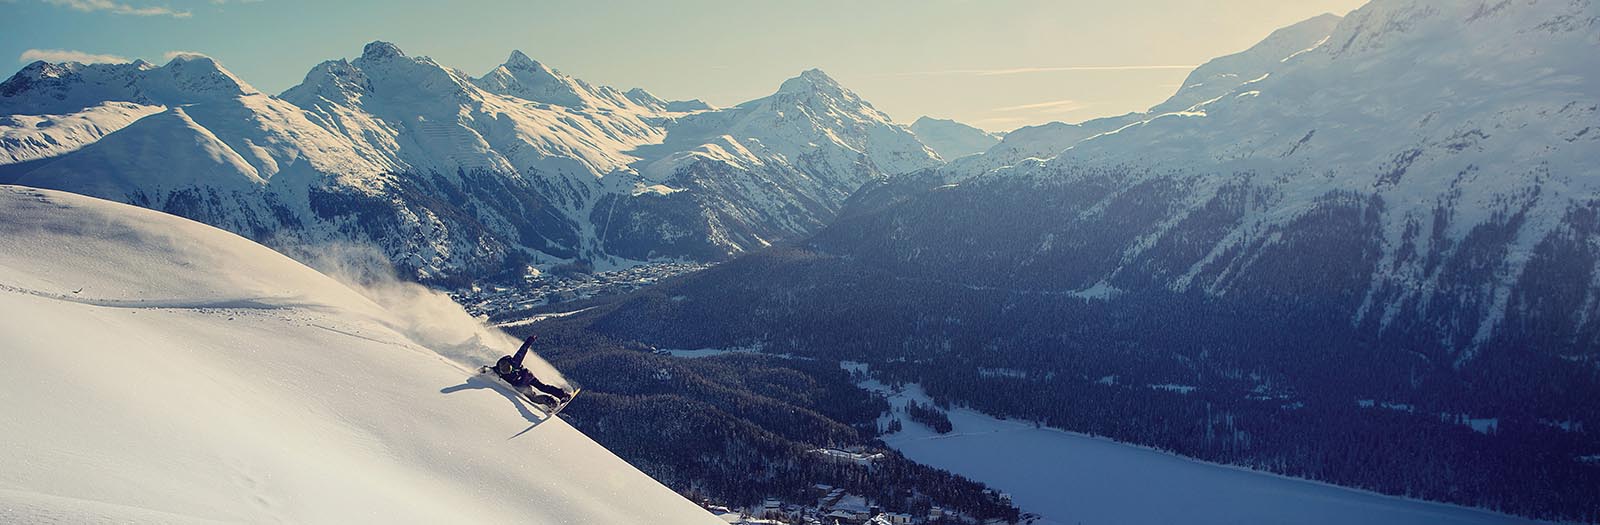 swiss ski resorts, swiss alps ski resorts, swiss alps ski vacations, swiss ski vacation packages